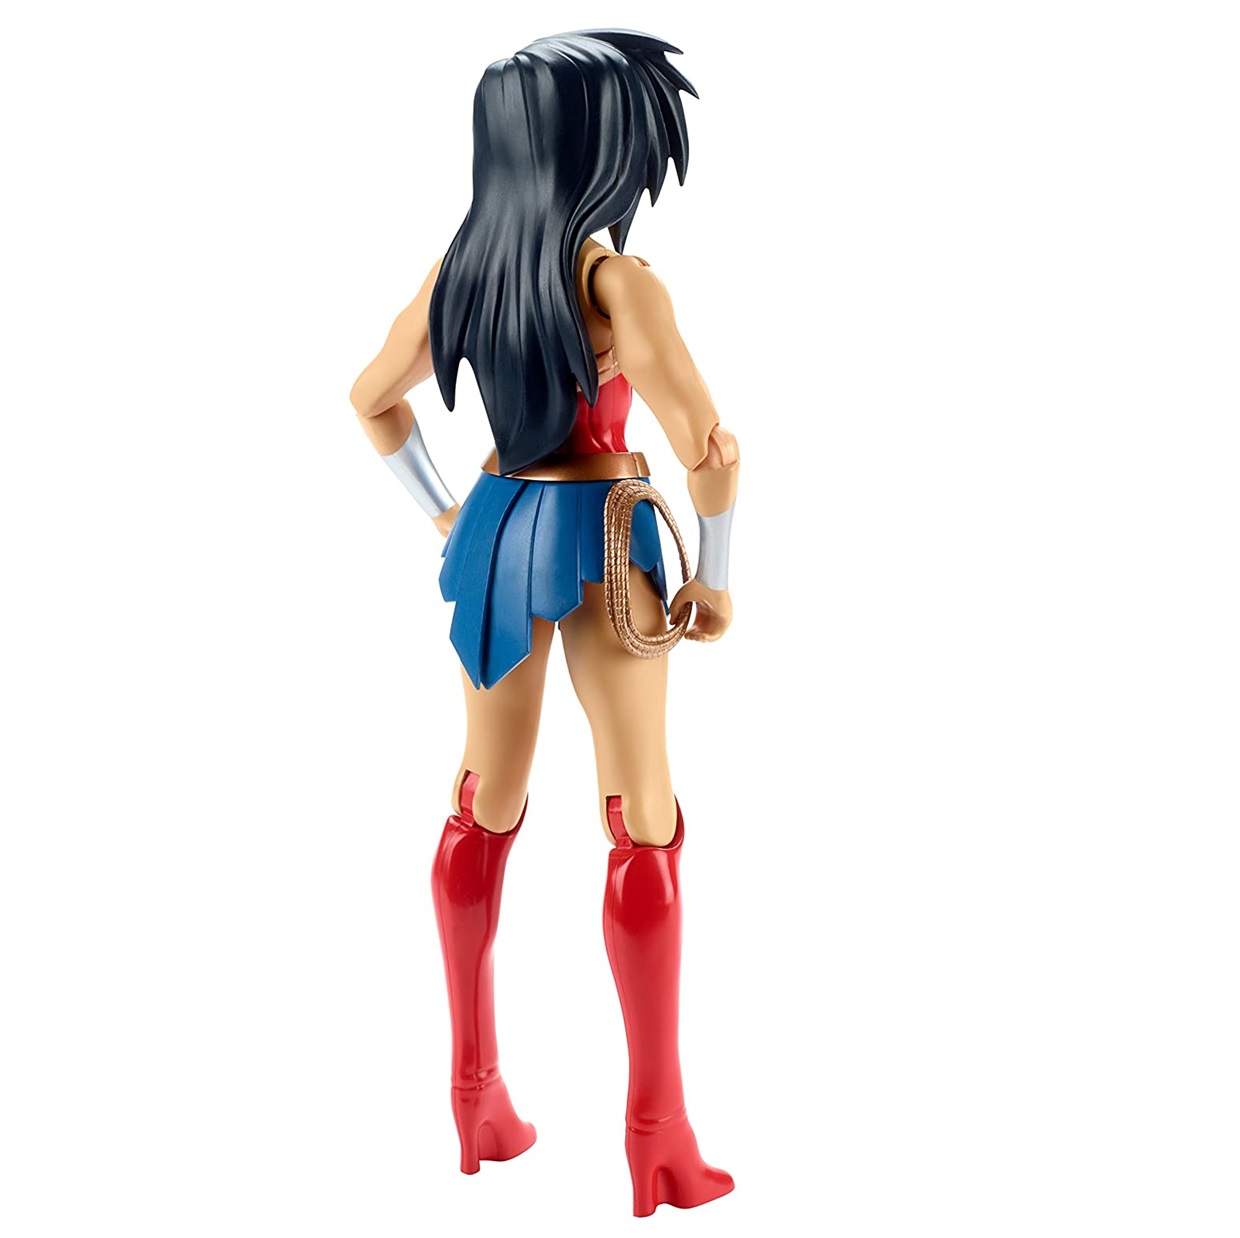 Wonder Woman Figura Dc Justice League Action Mattel 12 PuLG